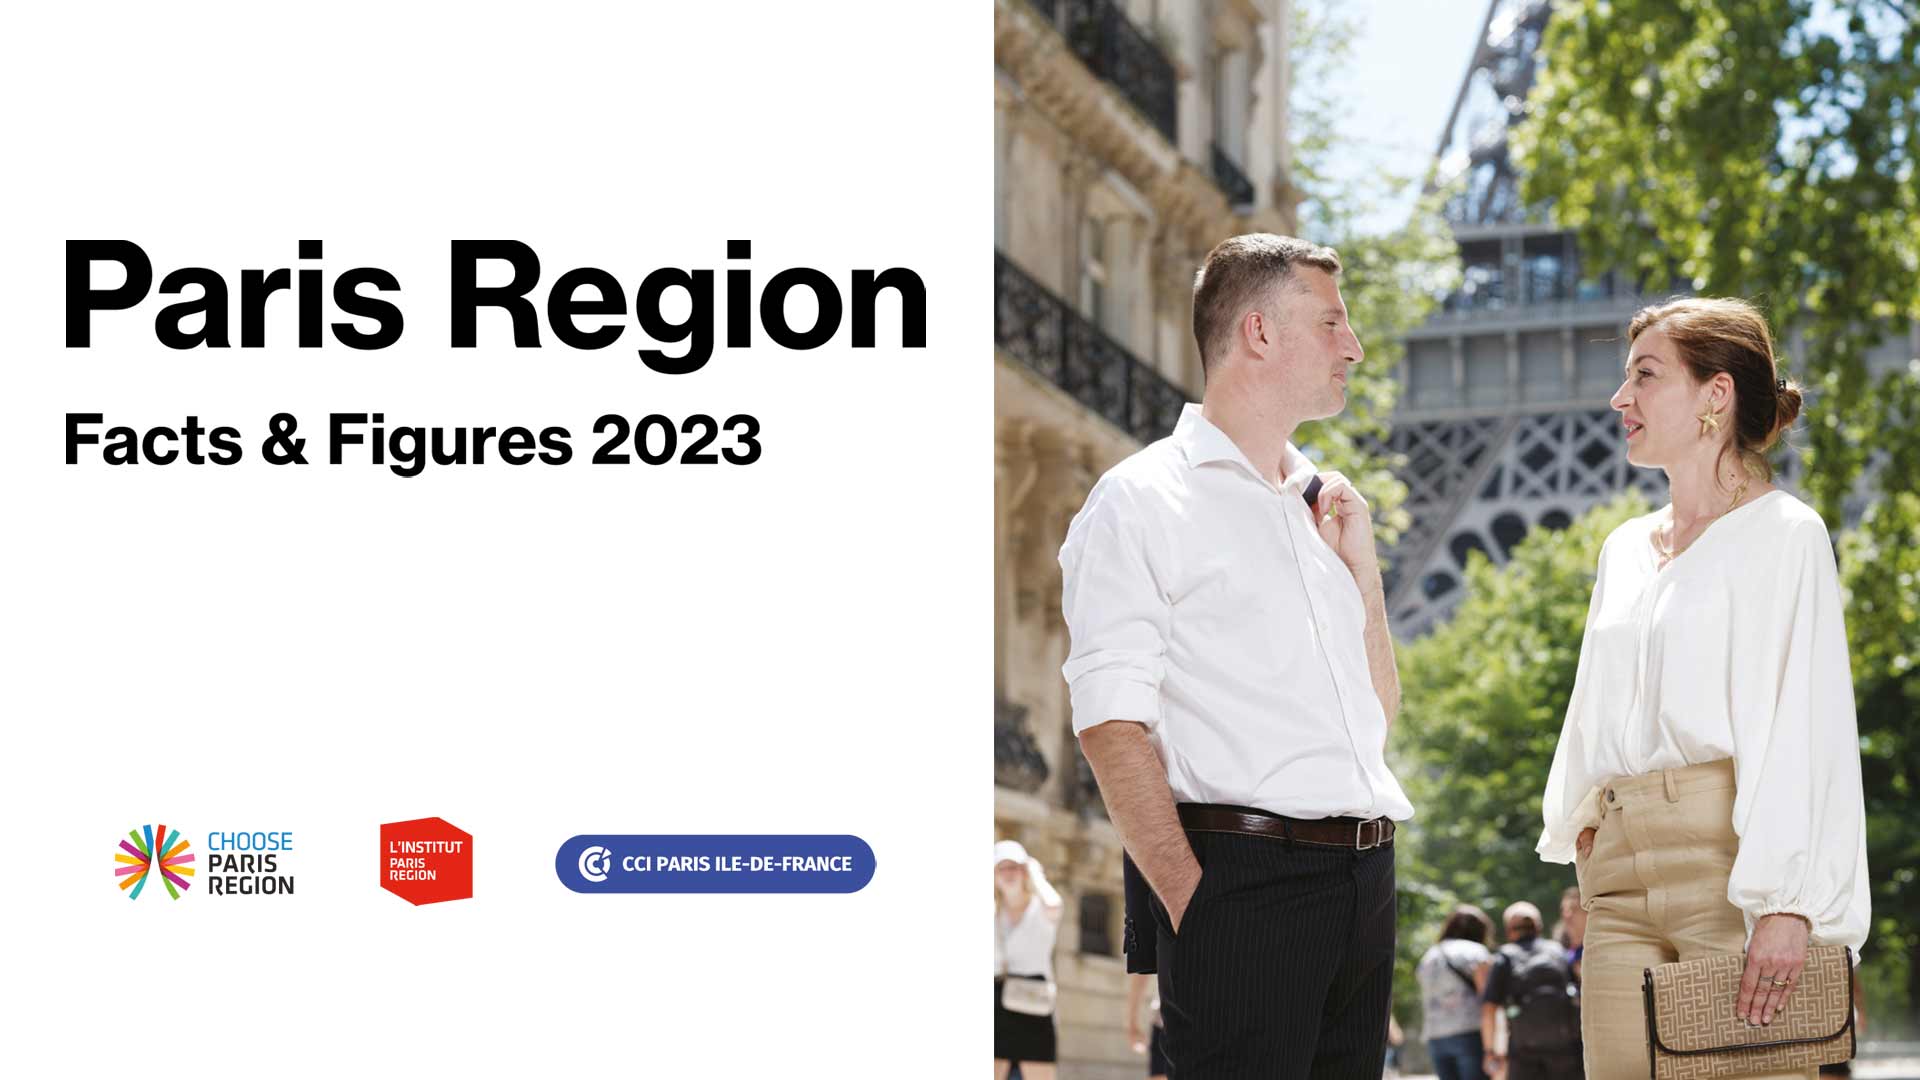 《巴黎大区2023年资料与数据》英文版最新发布